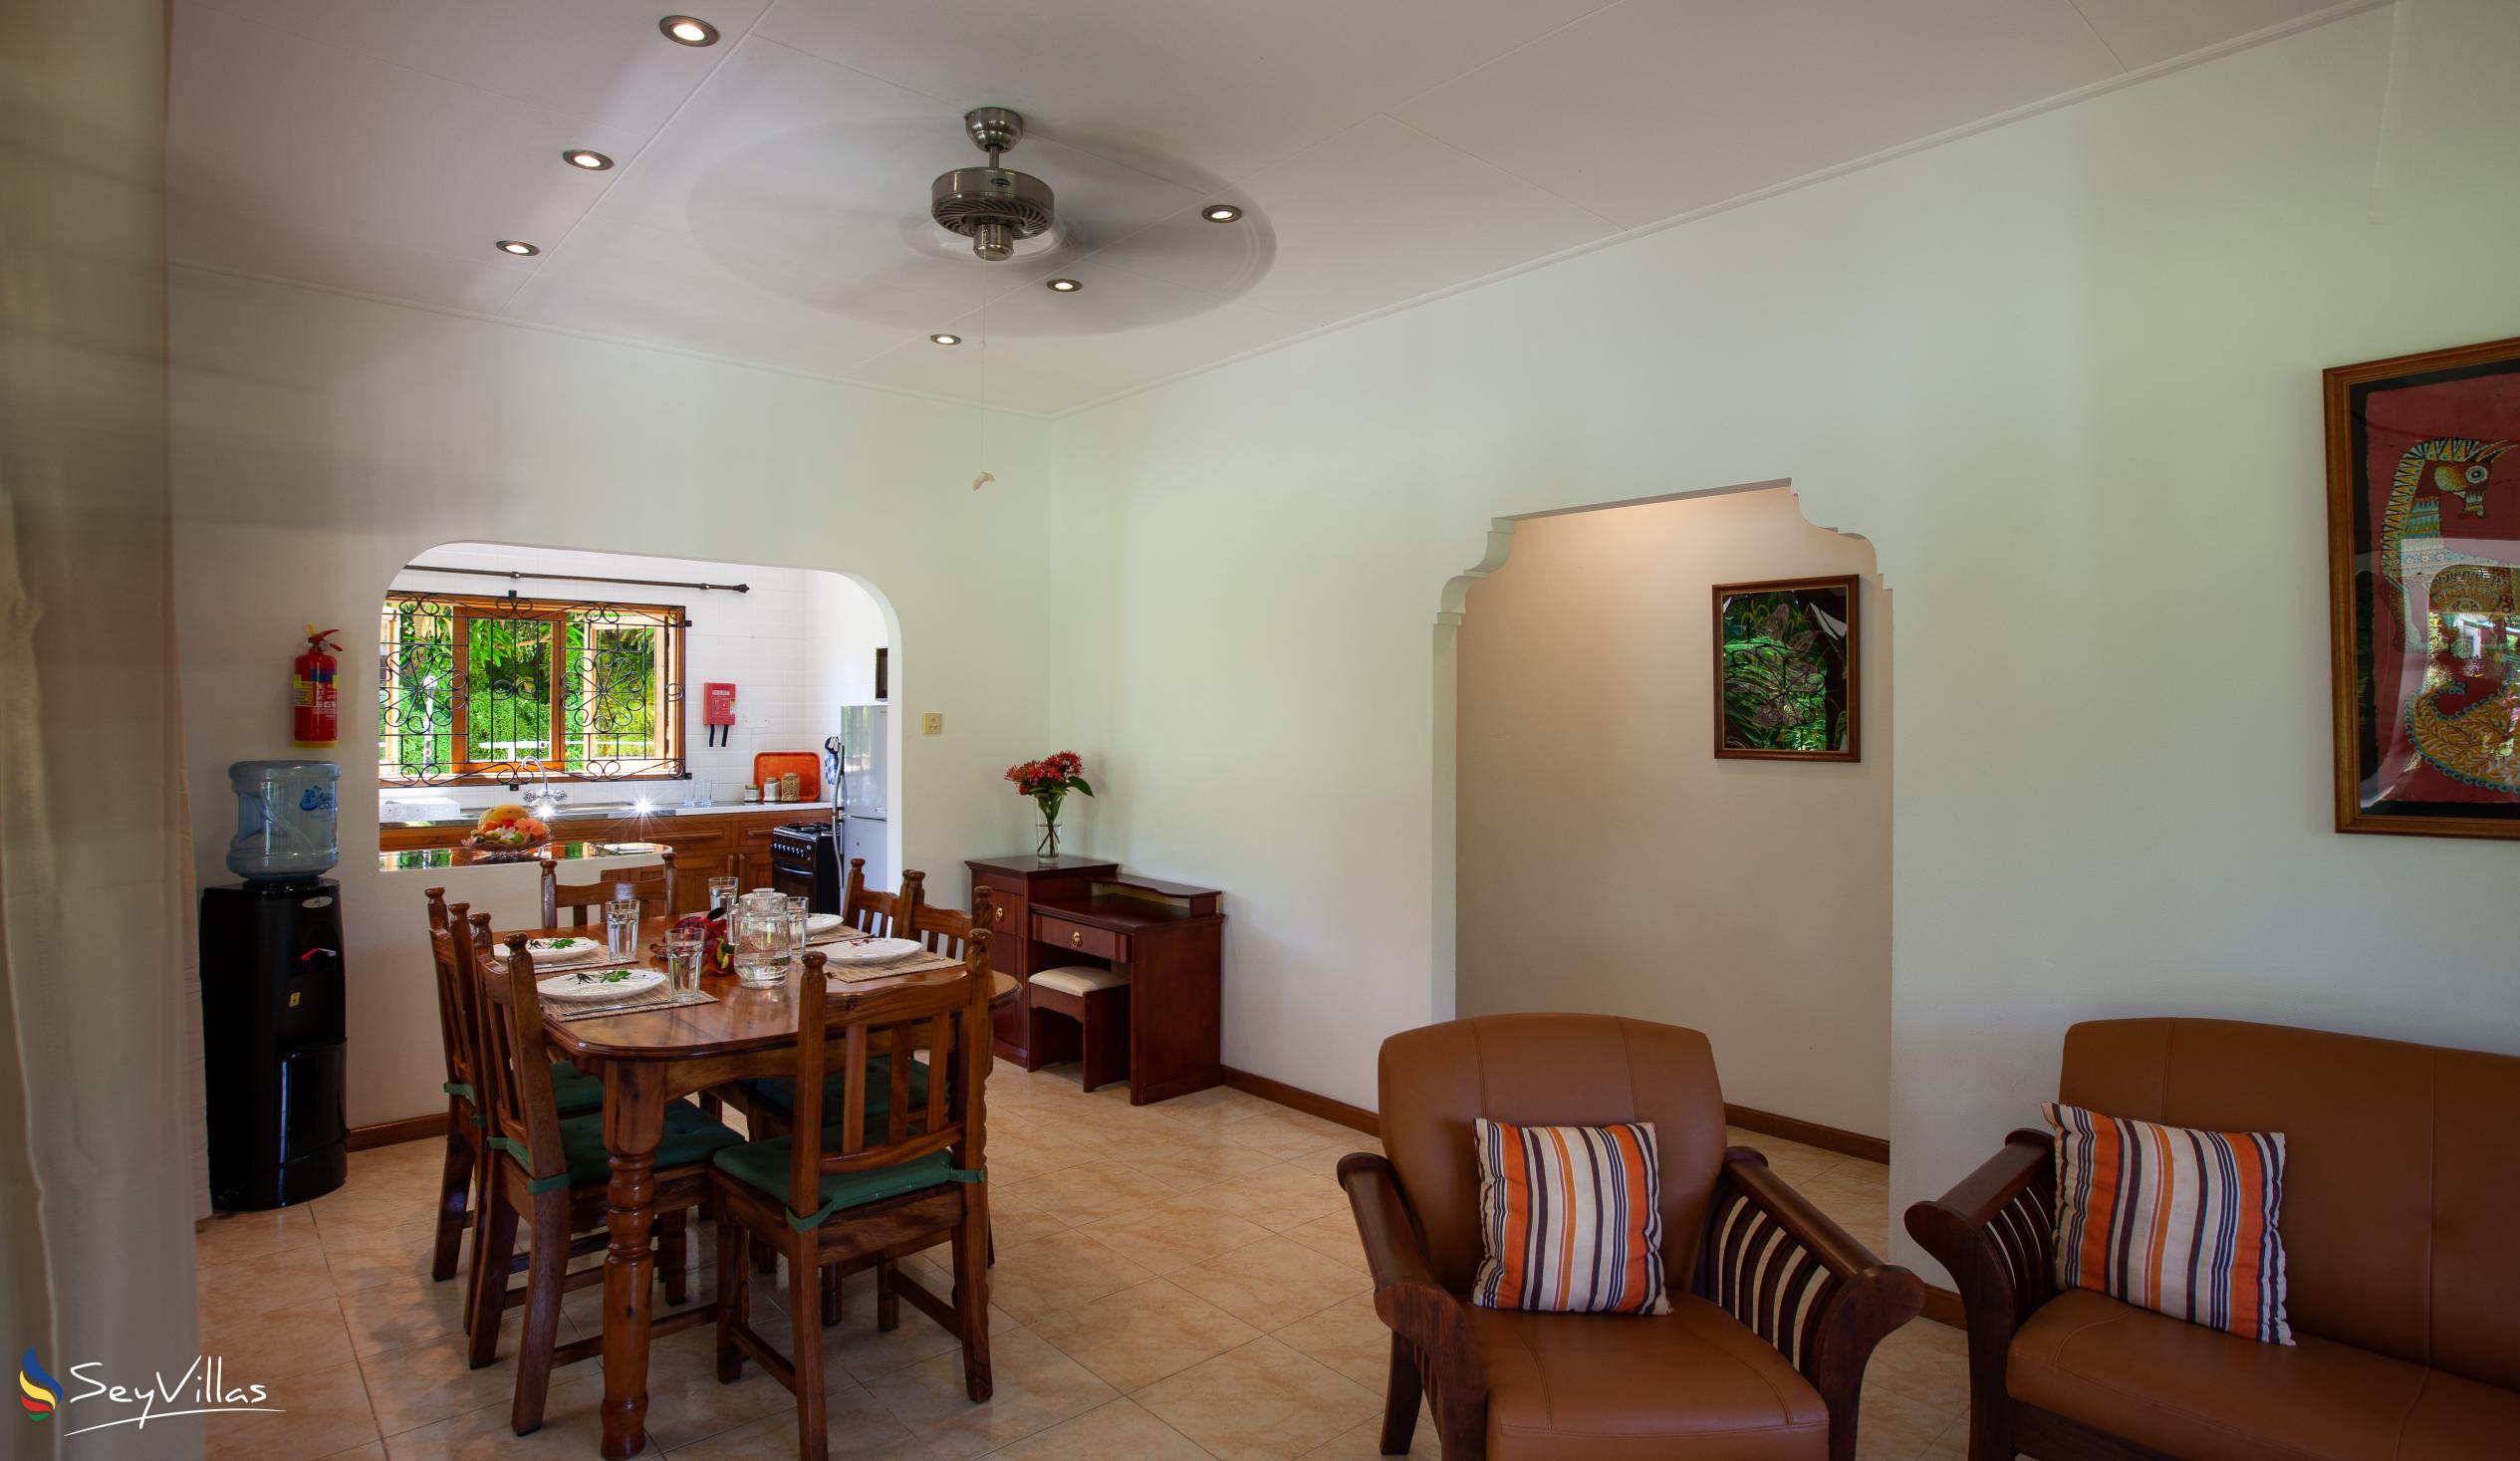 Foto 14: Chez Marlin - Maison d’hôtes de 2 chambres - Praslin (Seychelles)